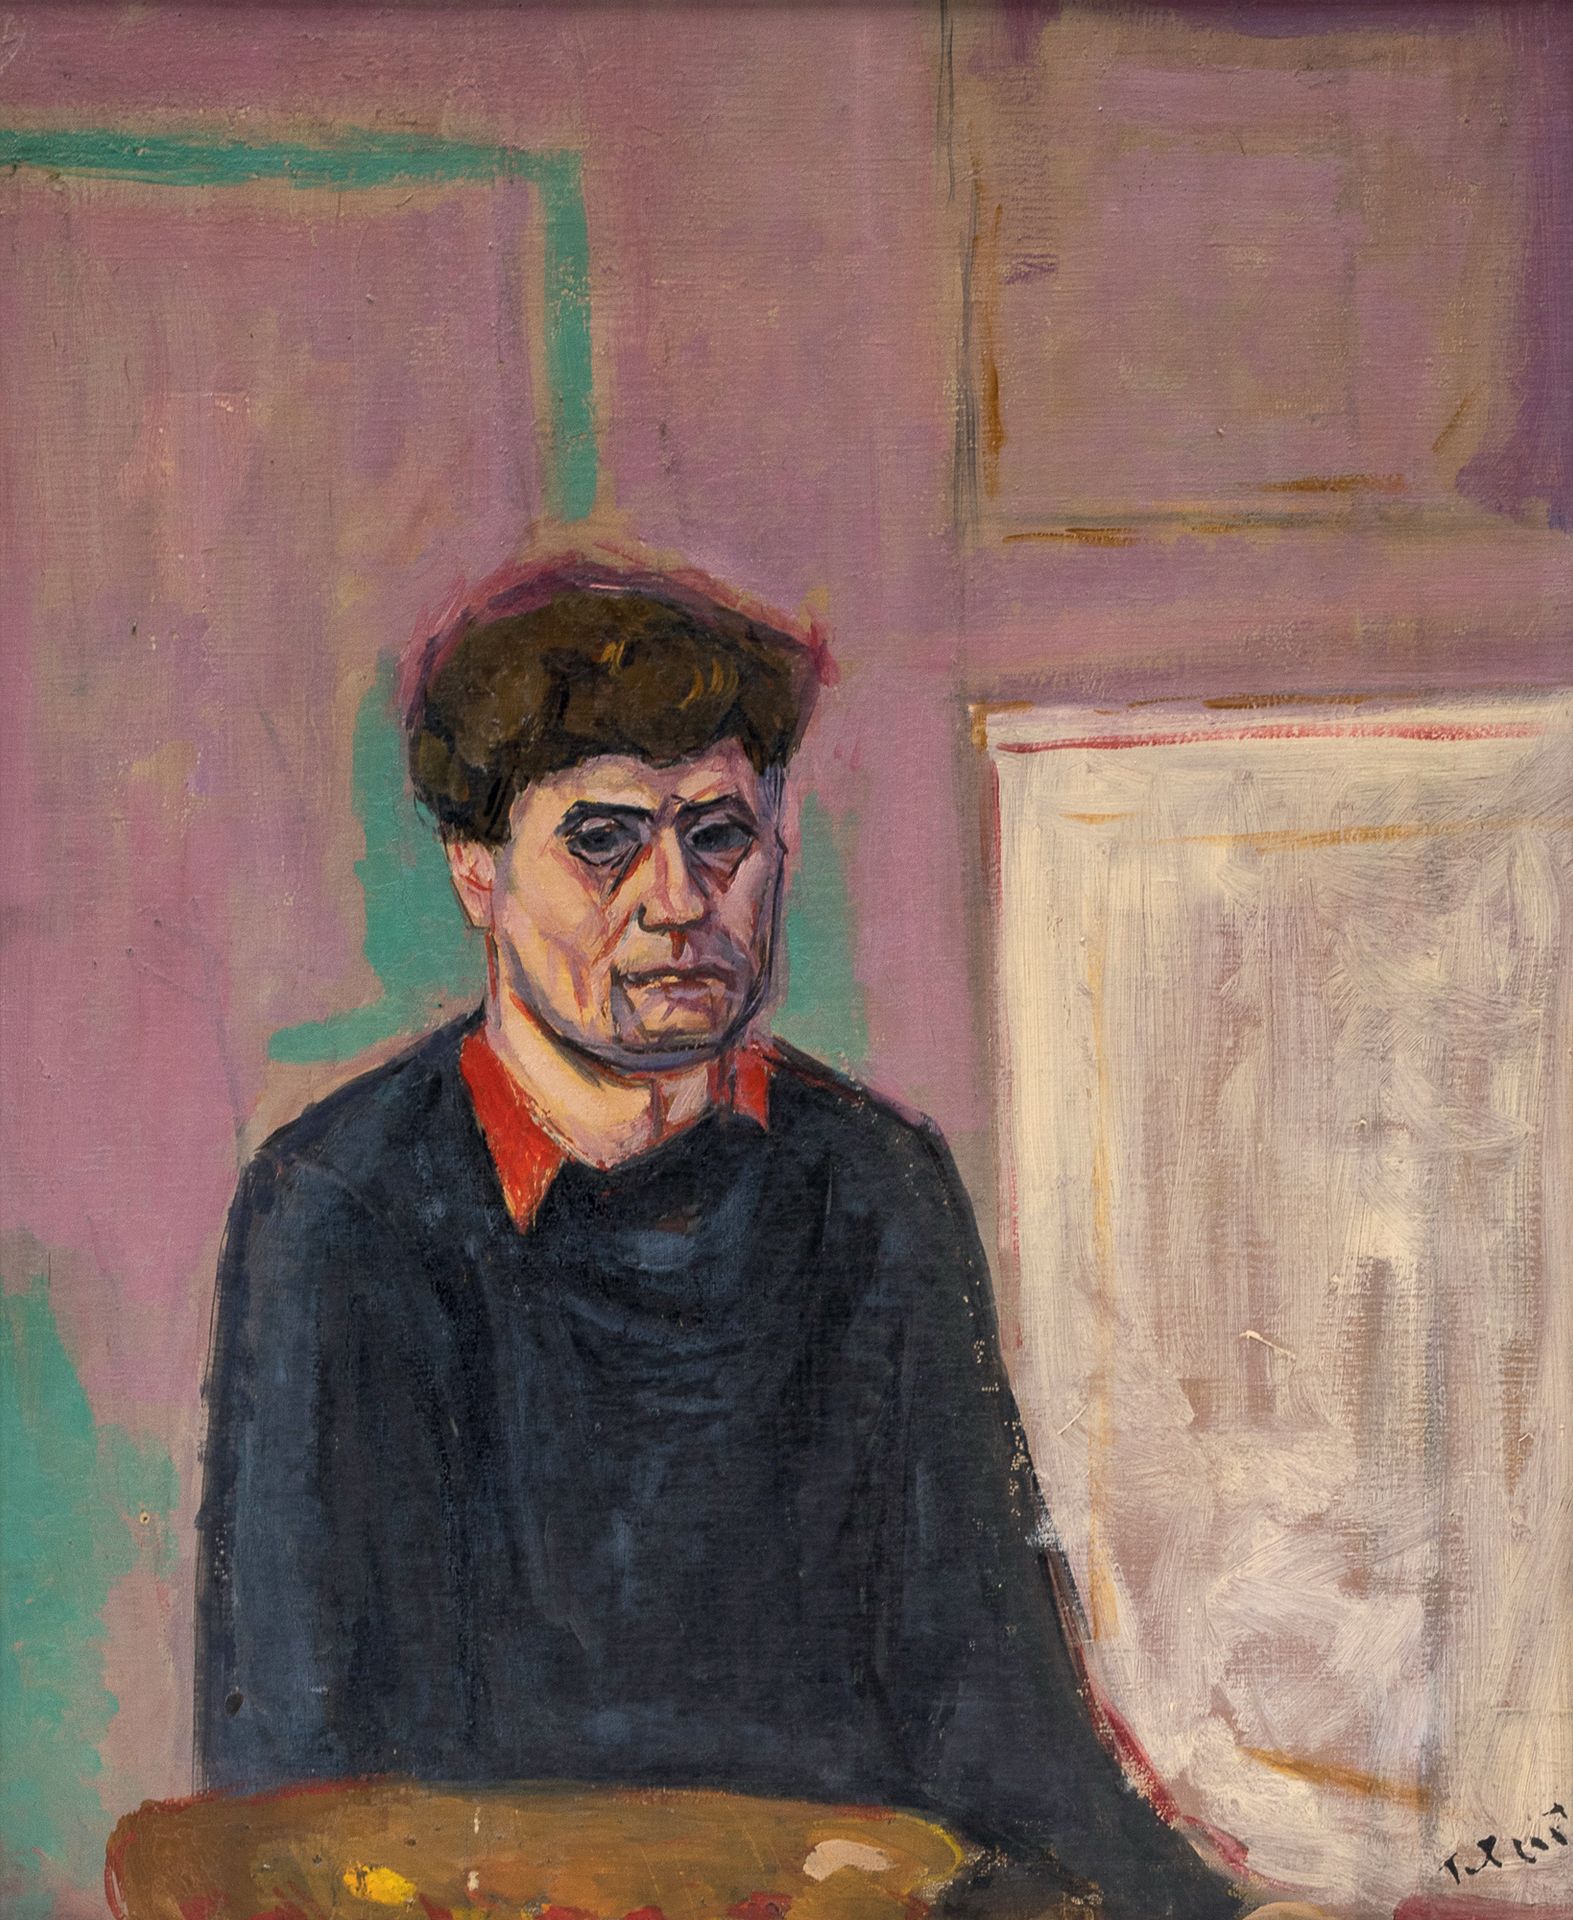 PIERRE TAL COAT (1905-1985) - Self-portrait, 1935
Oil on canvas, signed lower ri&hellip;